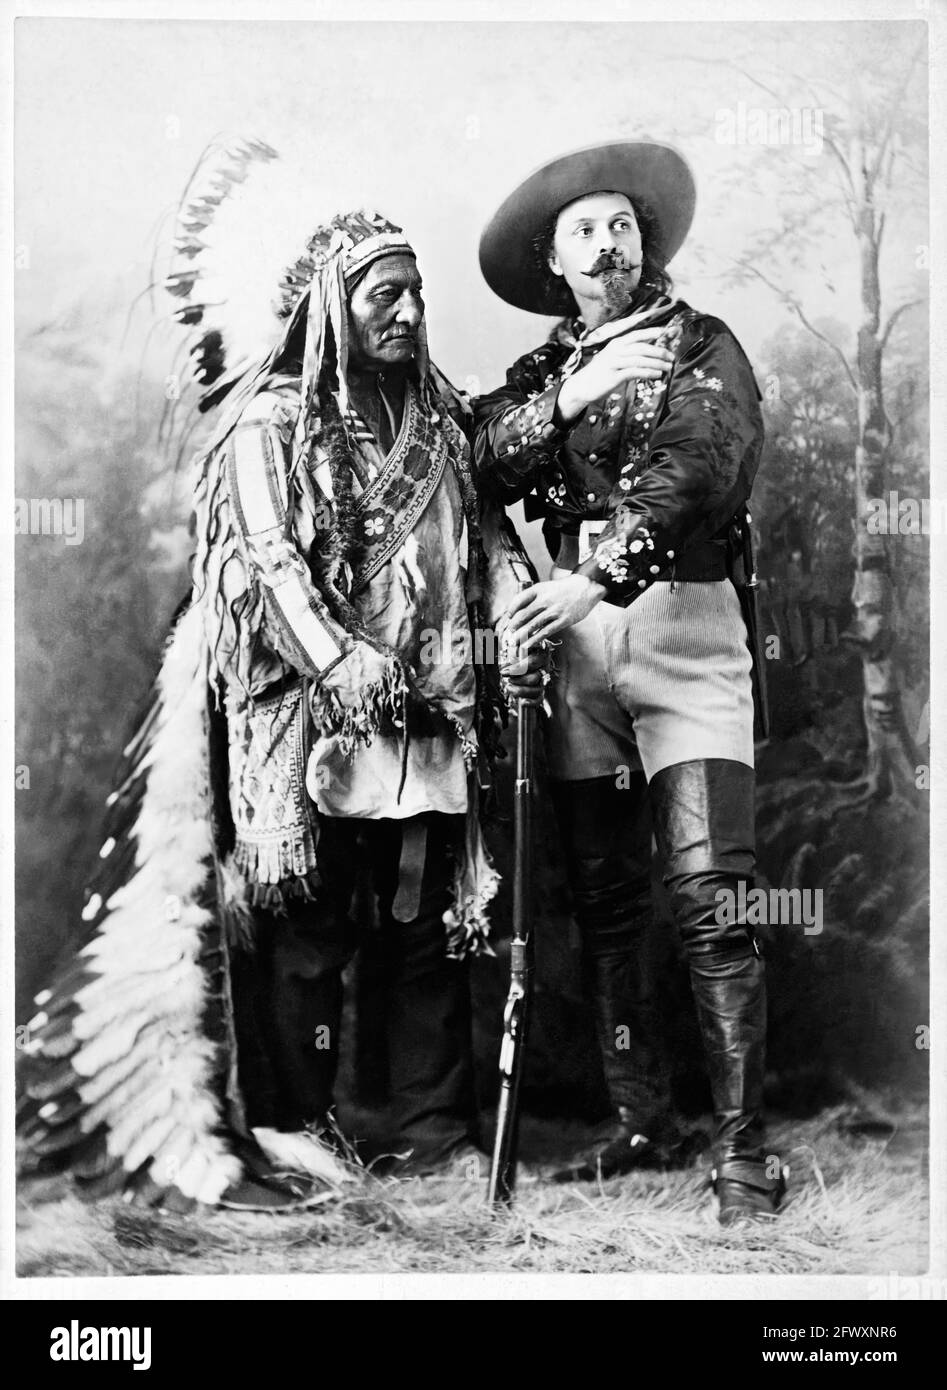 1880 ca , Montreal , CANADA : il celebre colonnello William Frederick CODY , conosciuto come BUFFALO BILL ( 1846 - 1917 ) con Chef SITTING BULL ( 1831 - 1890 ) di Sioux Hunkpapa al momento DELLO SPETTACOLO SELVAGGIO WEST . Foto di W.M. Notman & Son , Montreal . - Epopea del Selvaggio WEST - cowboy - cow-boy - Circus - uomo anziano vecchio - uomo anziano - baffi - barba - barba - baffi - Circo - cappello - cappello - cappello - piume - piume - piume - Indiani d'America - nativi americani - Nativi americani - Pellerossa - Redskins - fucile - fucile - pistola - arma - stivali - stivali --- Archivio GBB Foto Stock